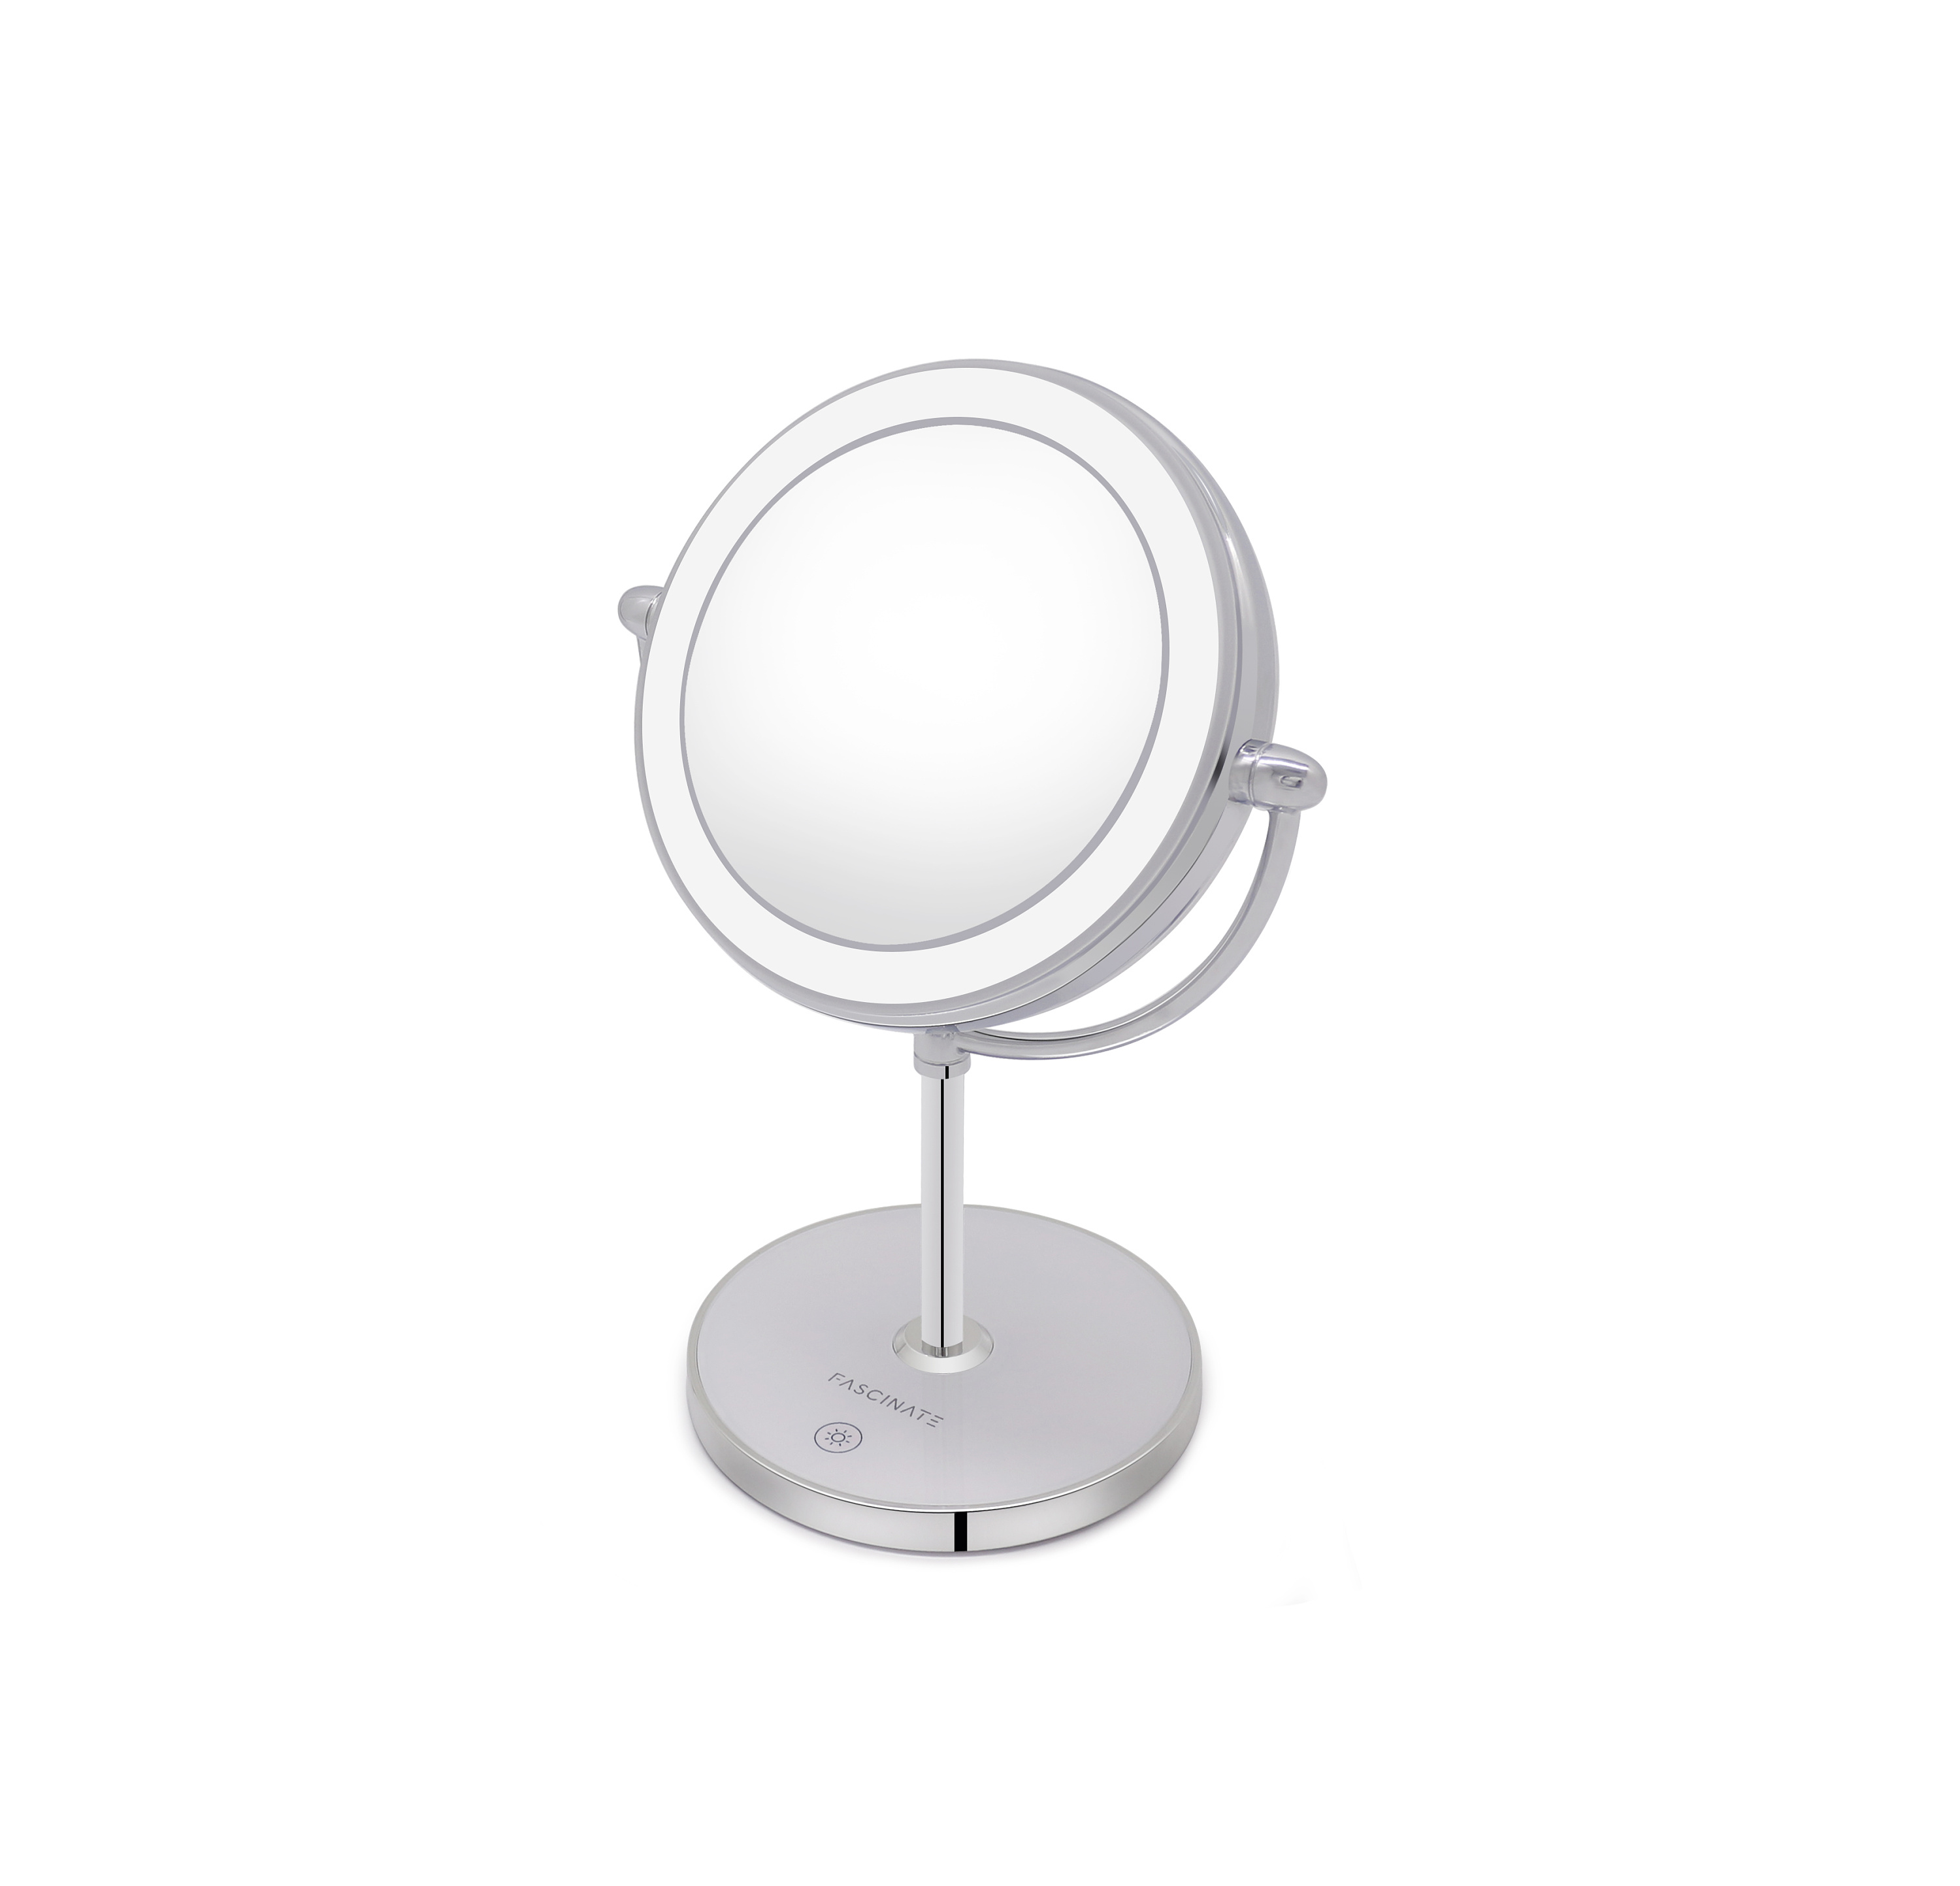 ZHUOSE 现代客厅浴室拱形镜子_设计素材库免费下载-美间设计